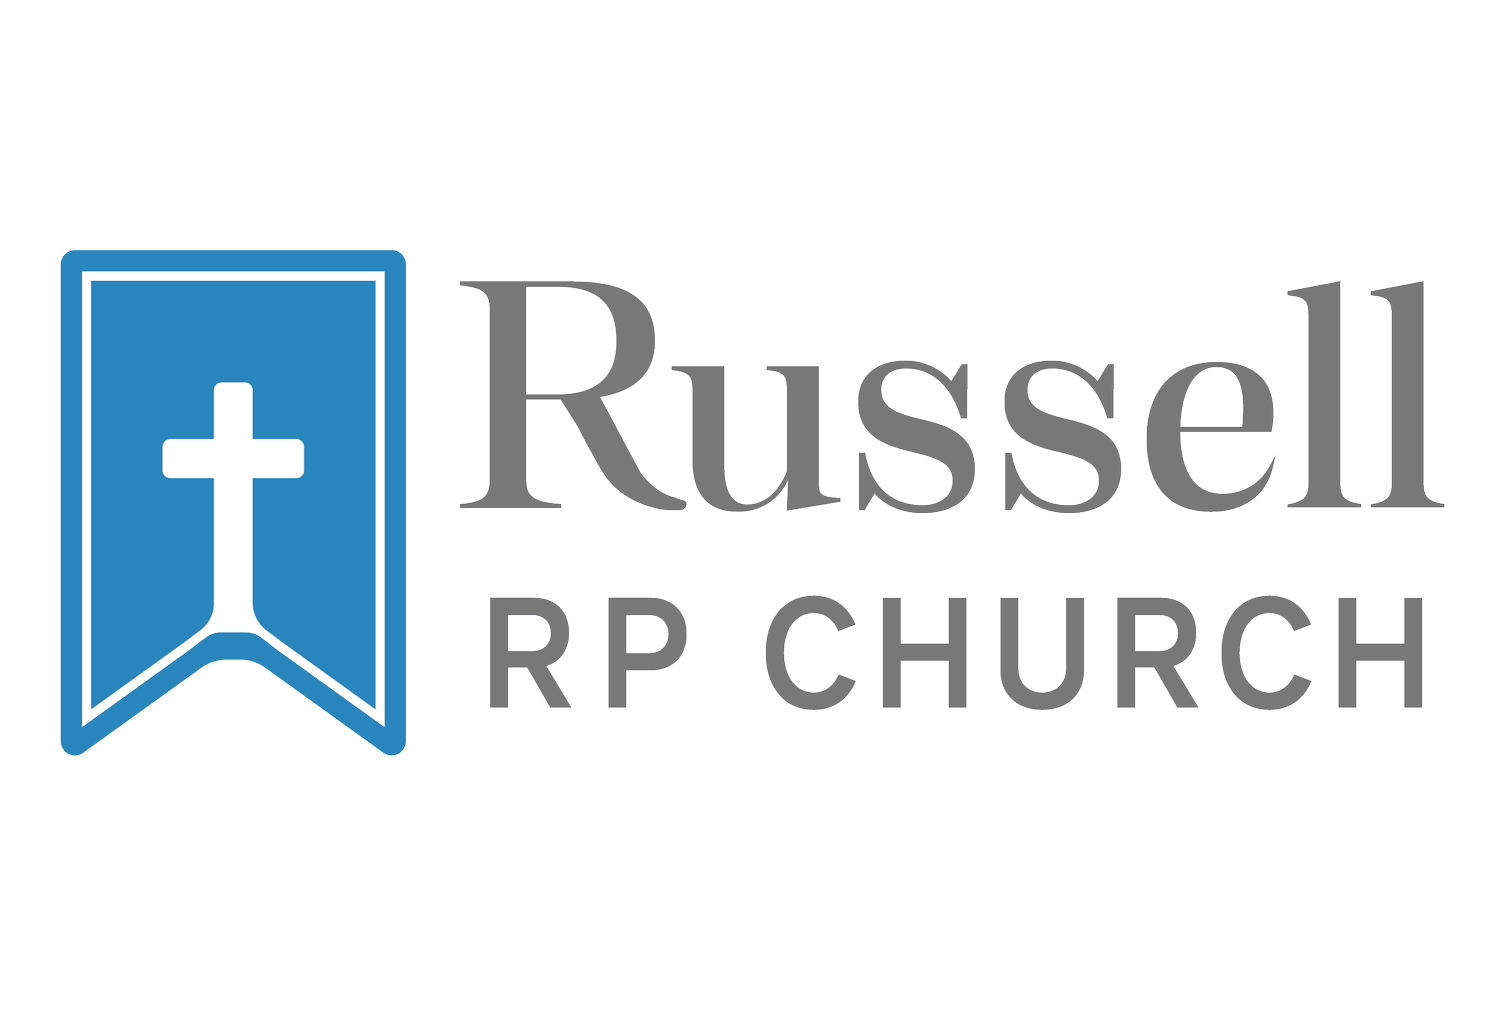 Russell Reformed Presbyterian Church